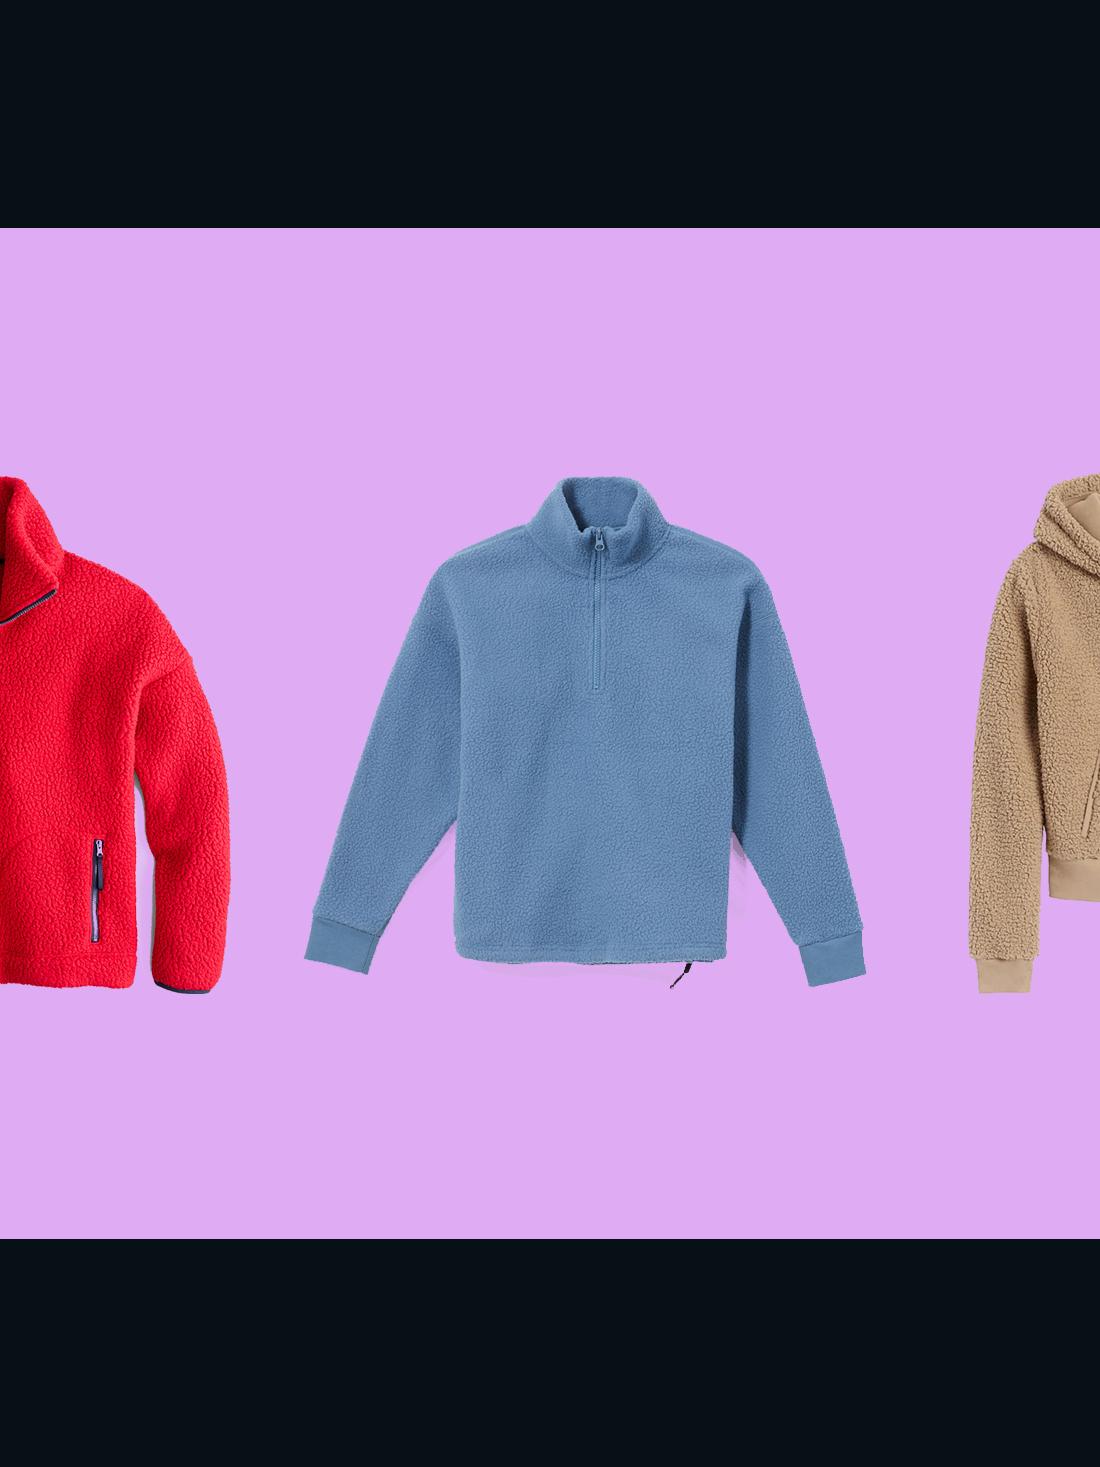 Fleece Pullover Trend 15 Pieces We Love Cnn Underscored